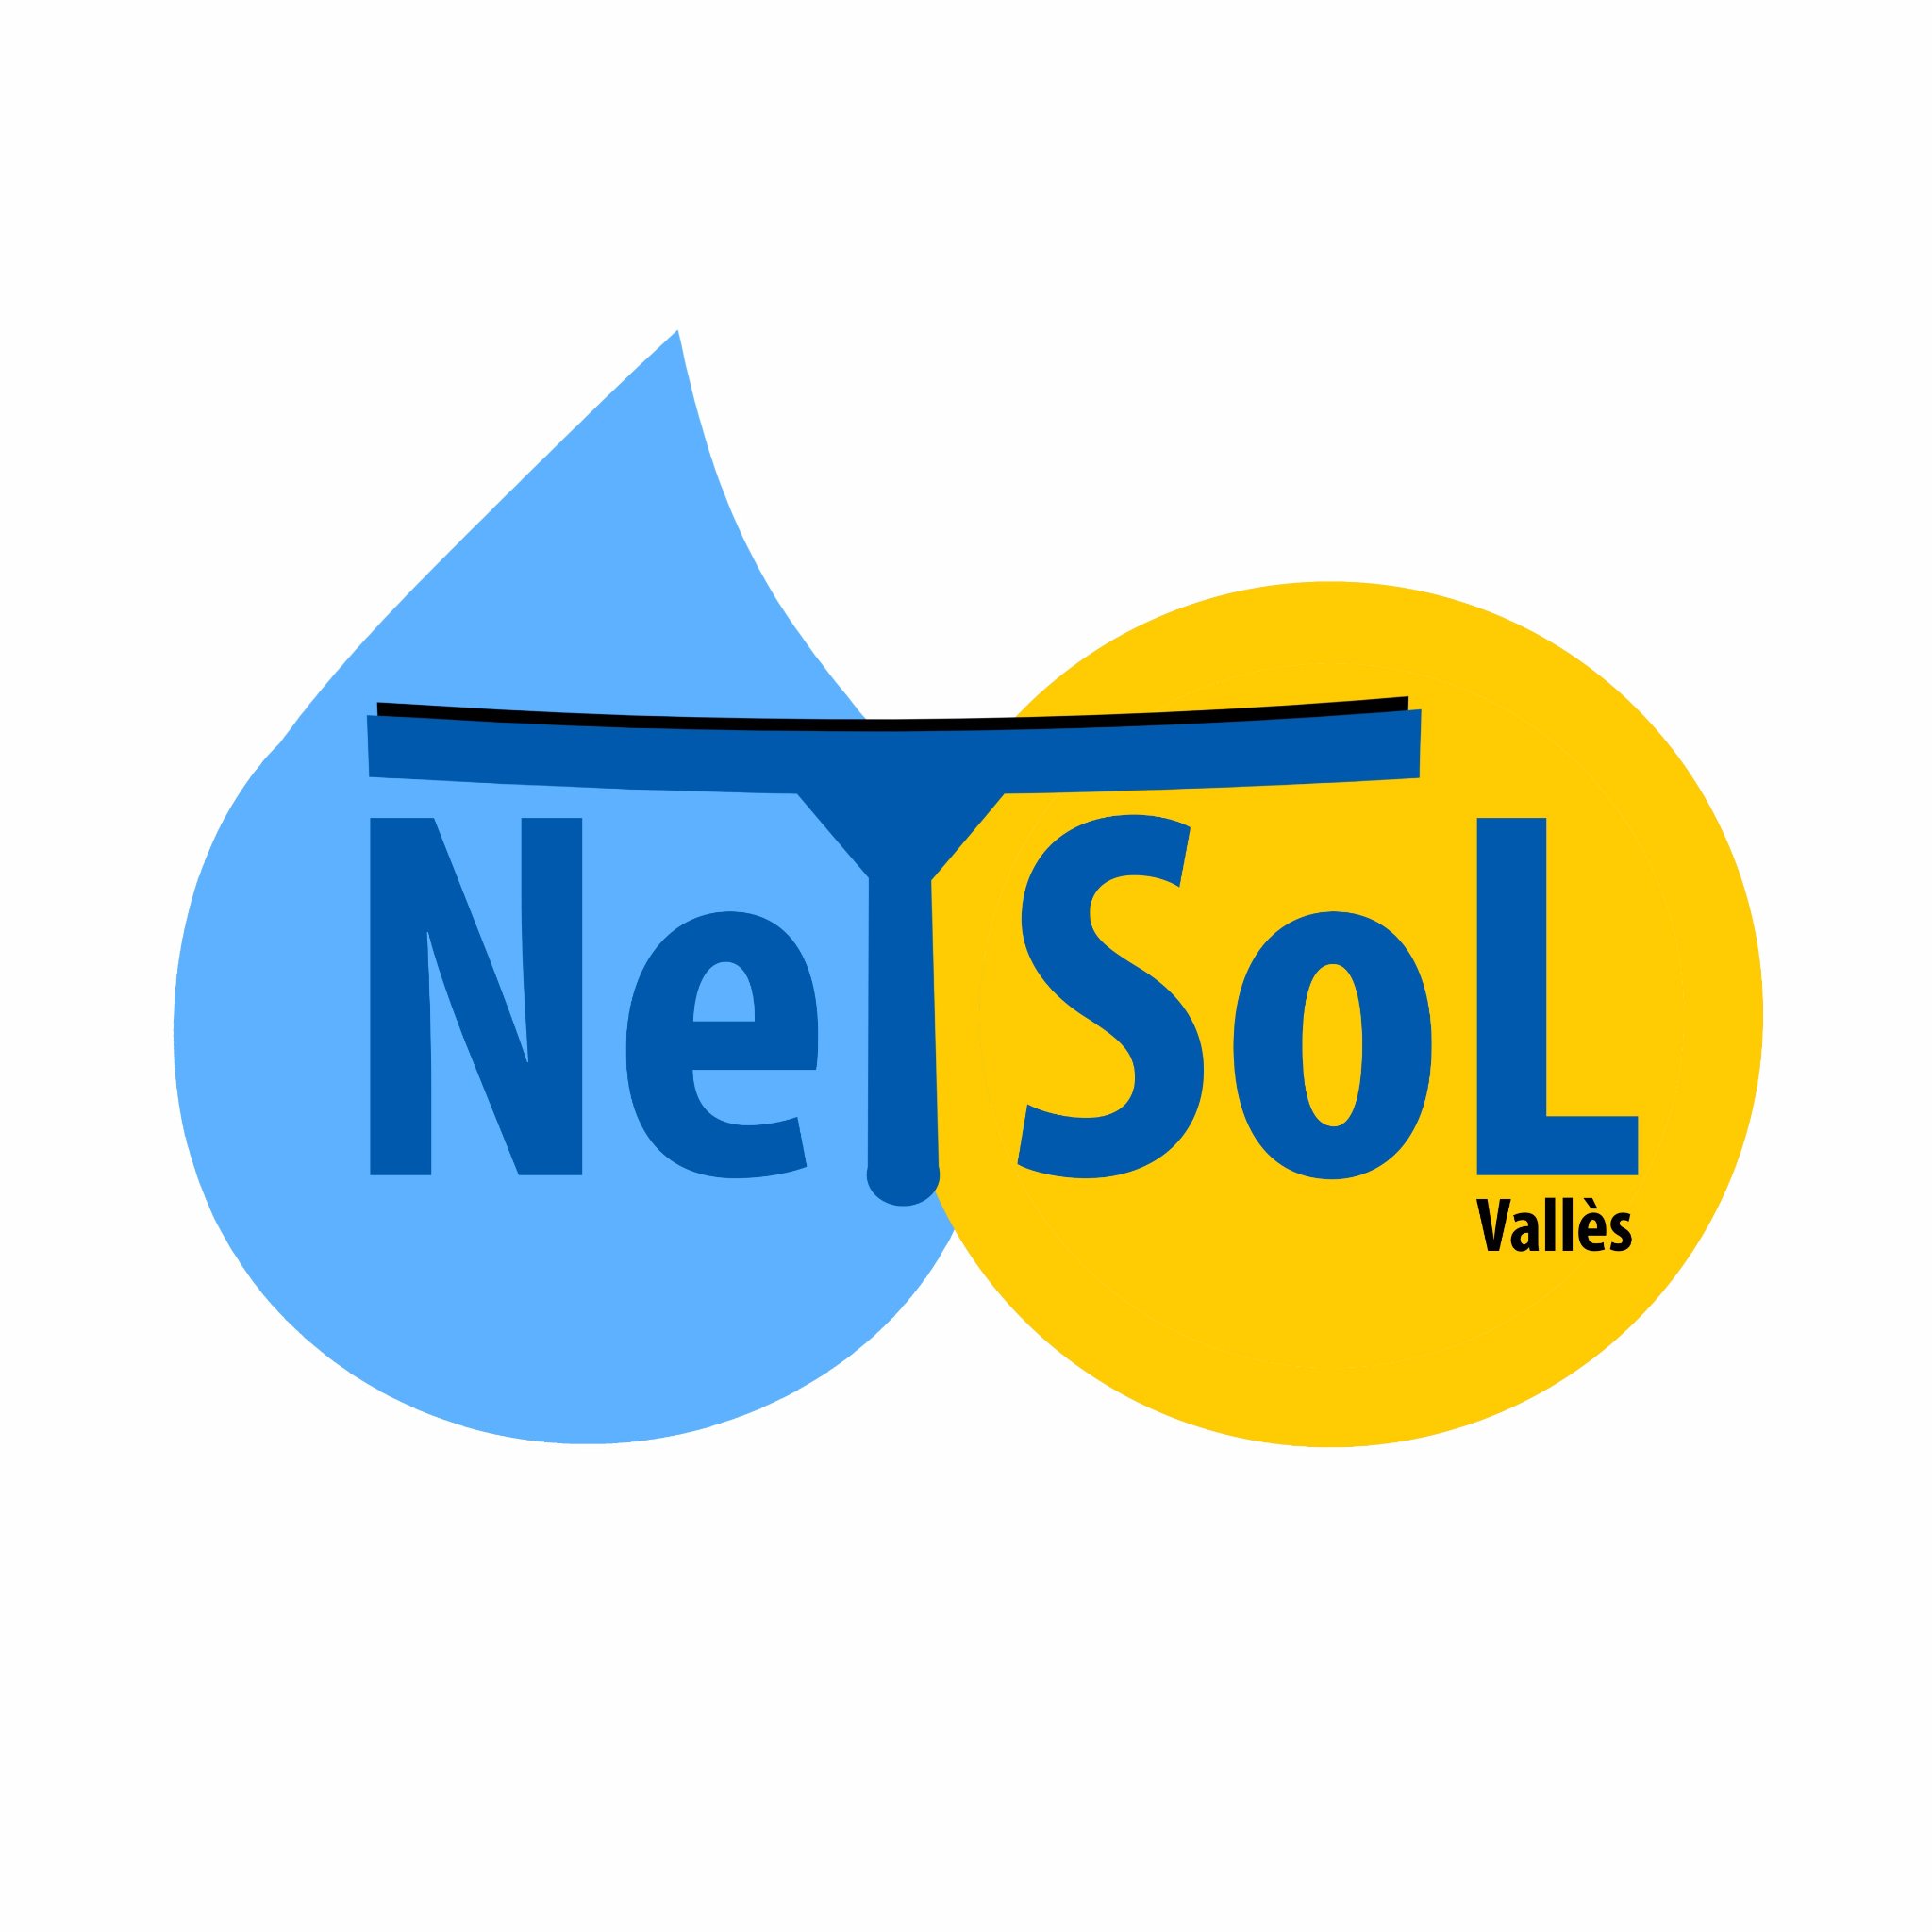 NetSol Serveis Catalunya S.L.,
La limpieza de calidad a tu alcance.
Servicios de limpieza especializados para empresas, comunidades y comercios.
Vallès Occ.